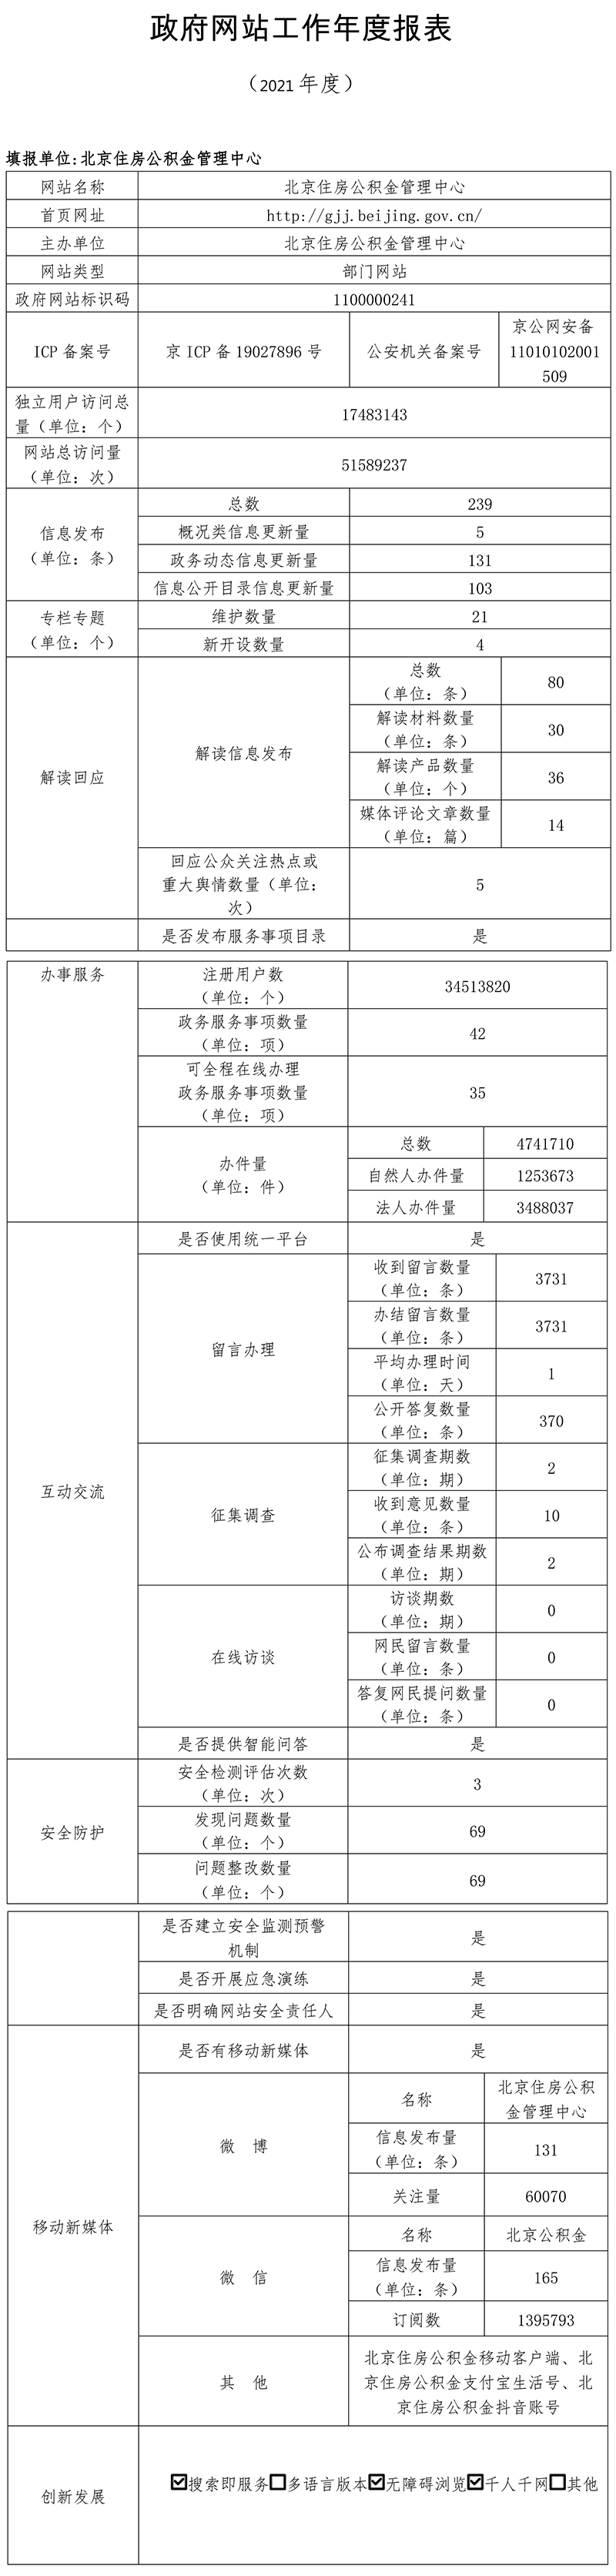 北京住房公積金管理中心2021年政府網站年度工作報表